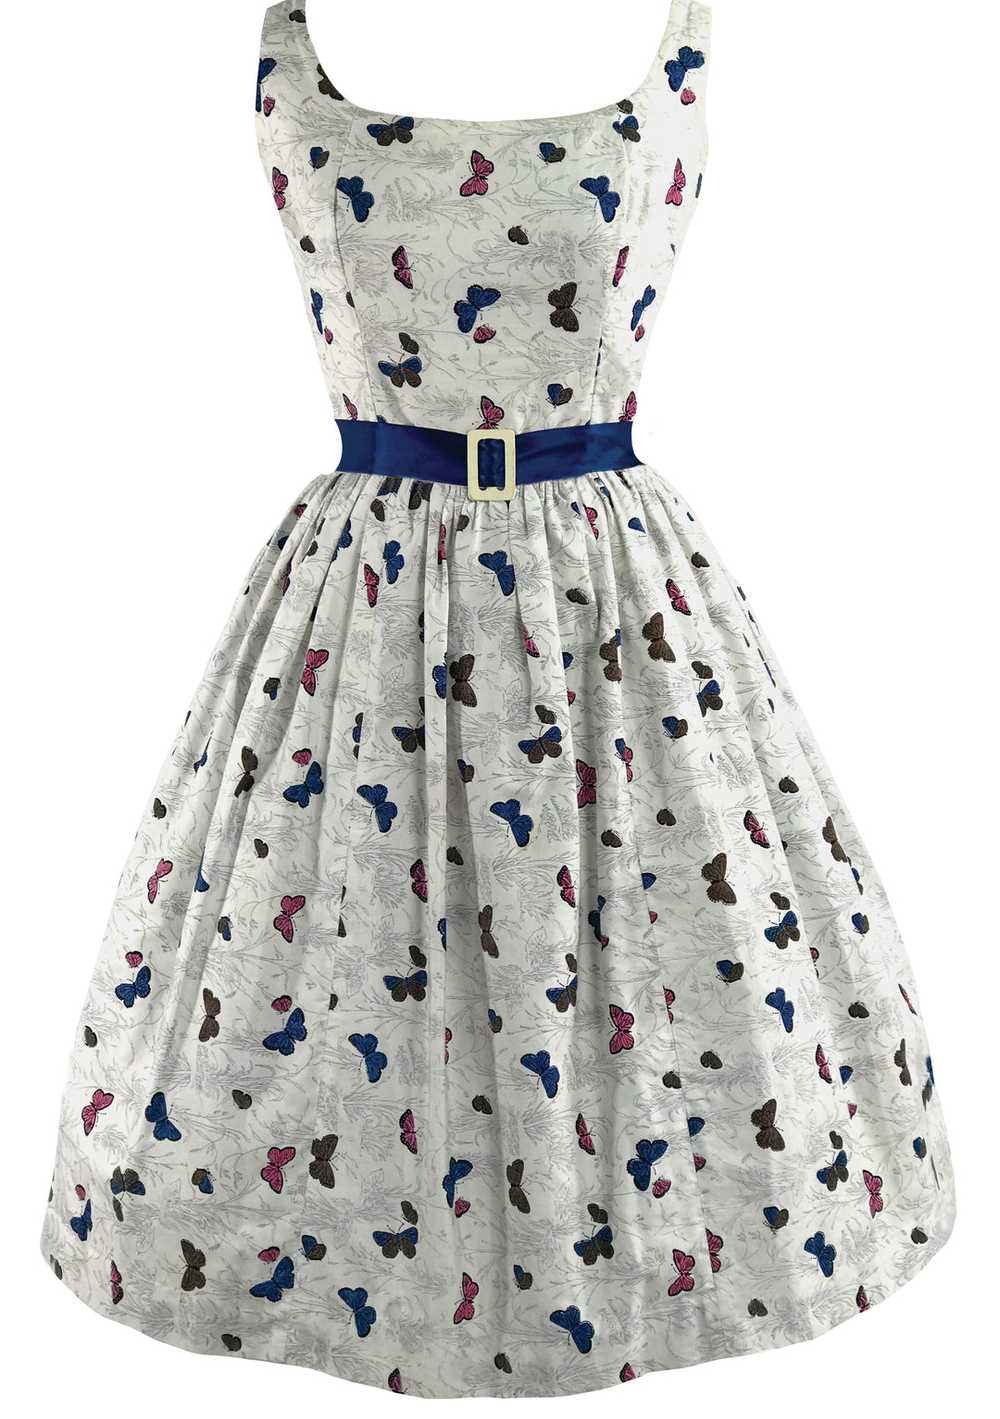 Lovely 1950s Novelty Butterfly Print Cotton Dress… - image 1